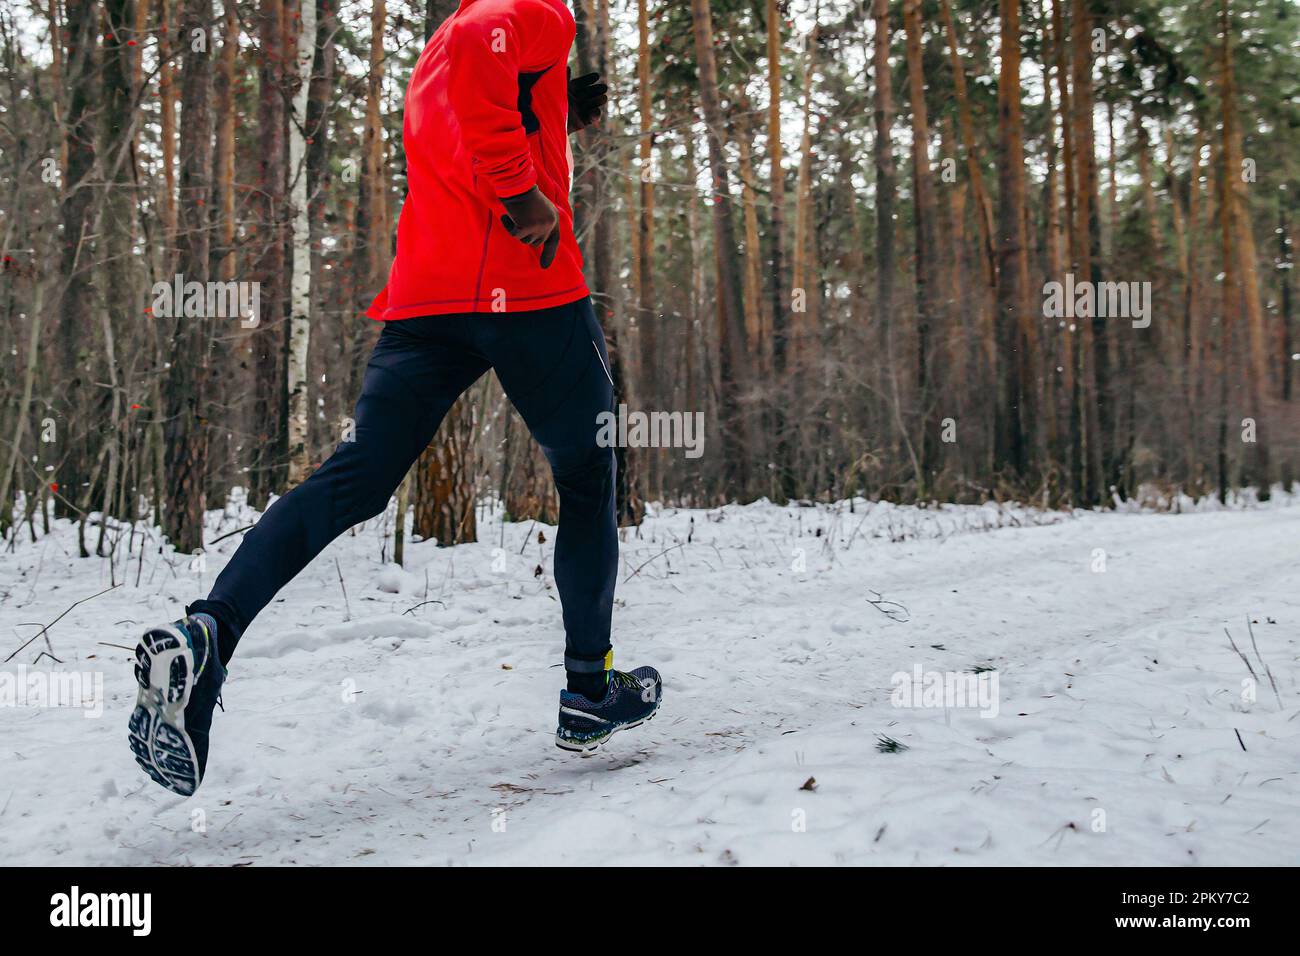 Running Trail Race für Männer in roter Sportjacke, Jogging im verschneiten Wald bei kaltem Wetter Stockfoto